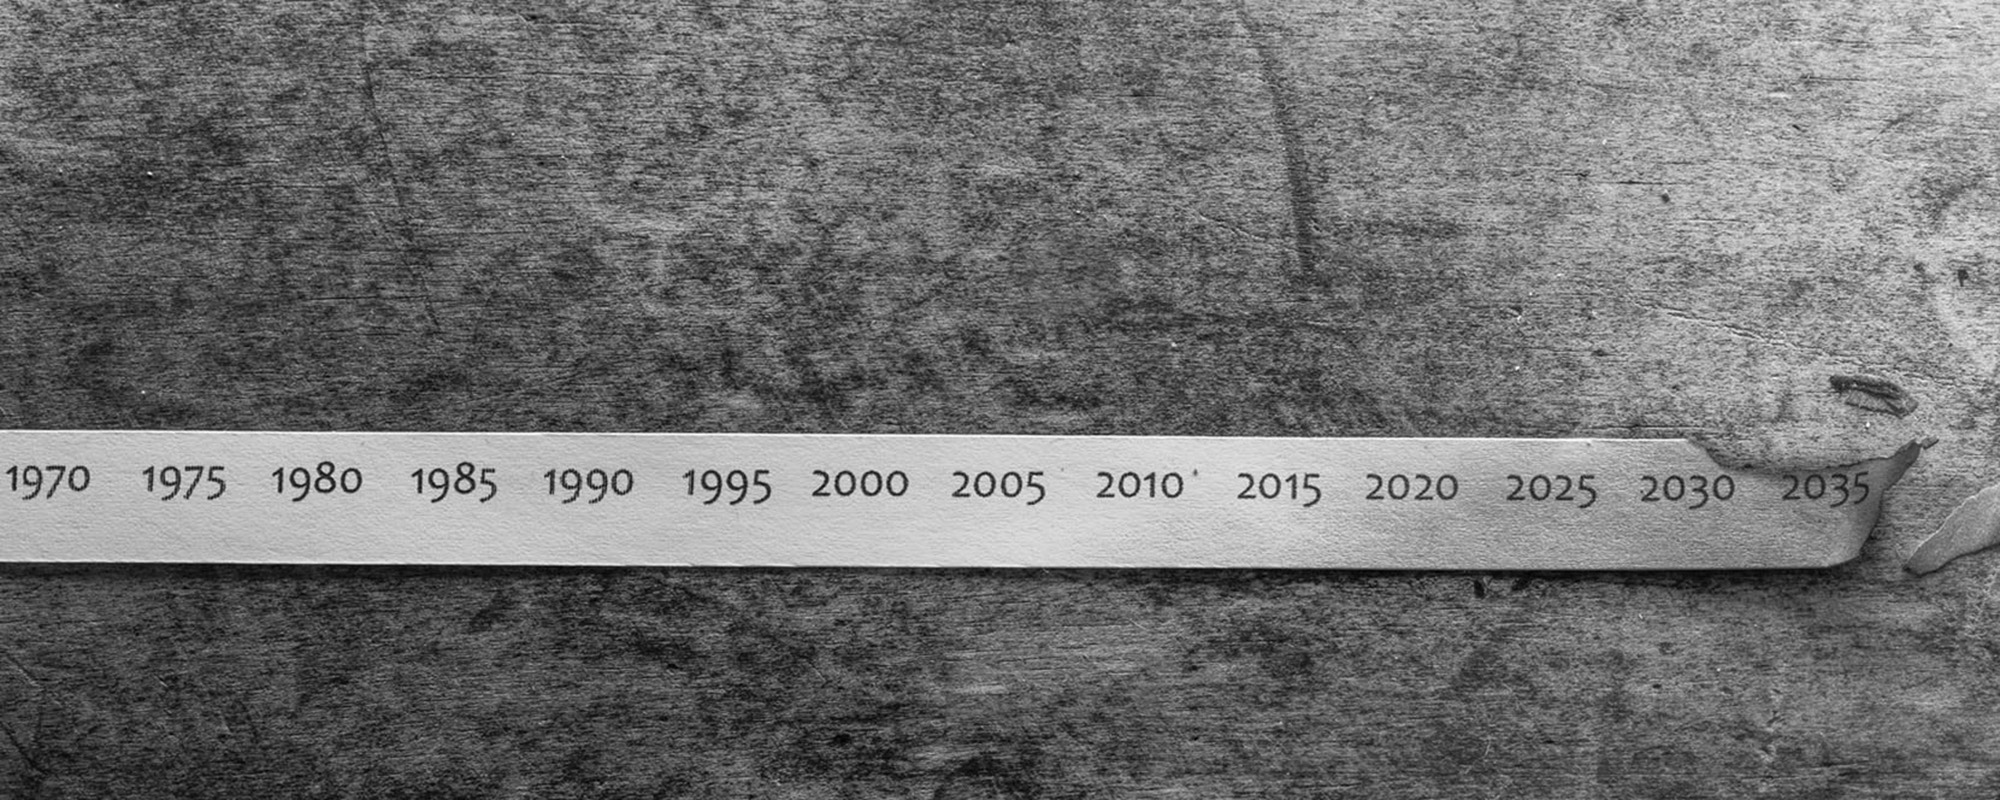 Ein Zeitstrahl mit Daten von 1970 bis 2035.